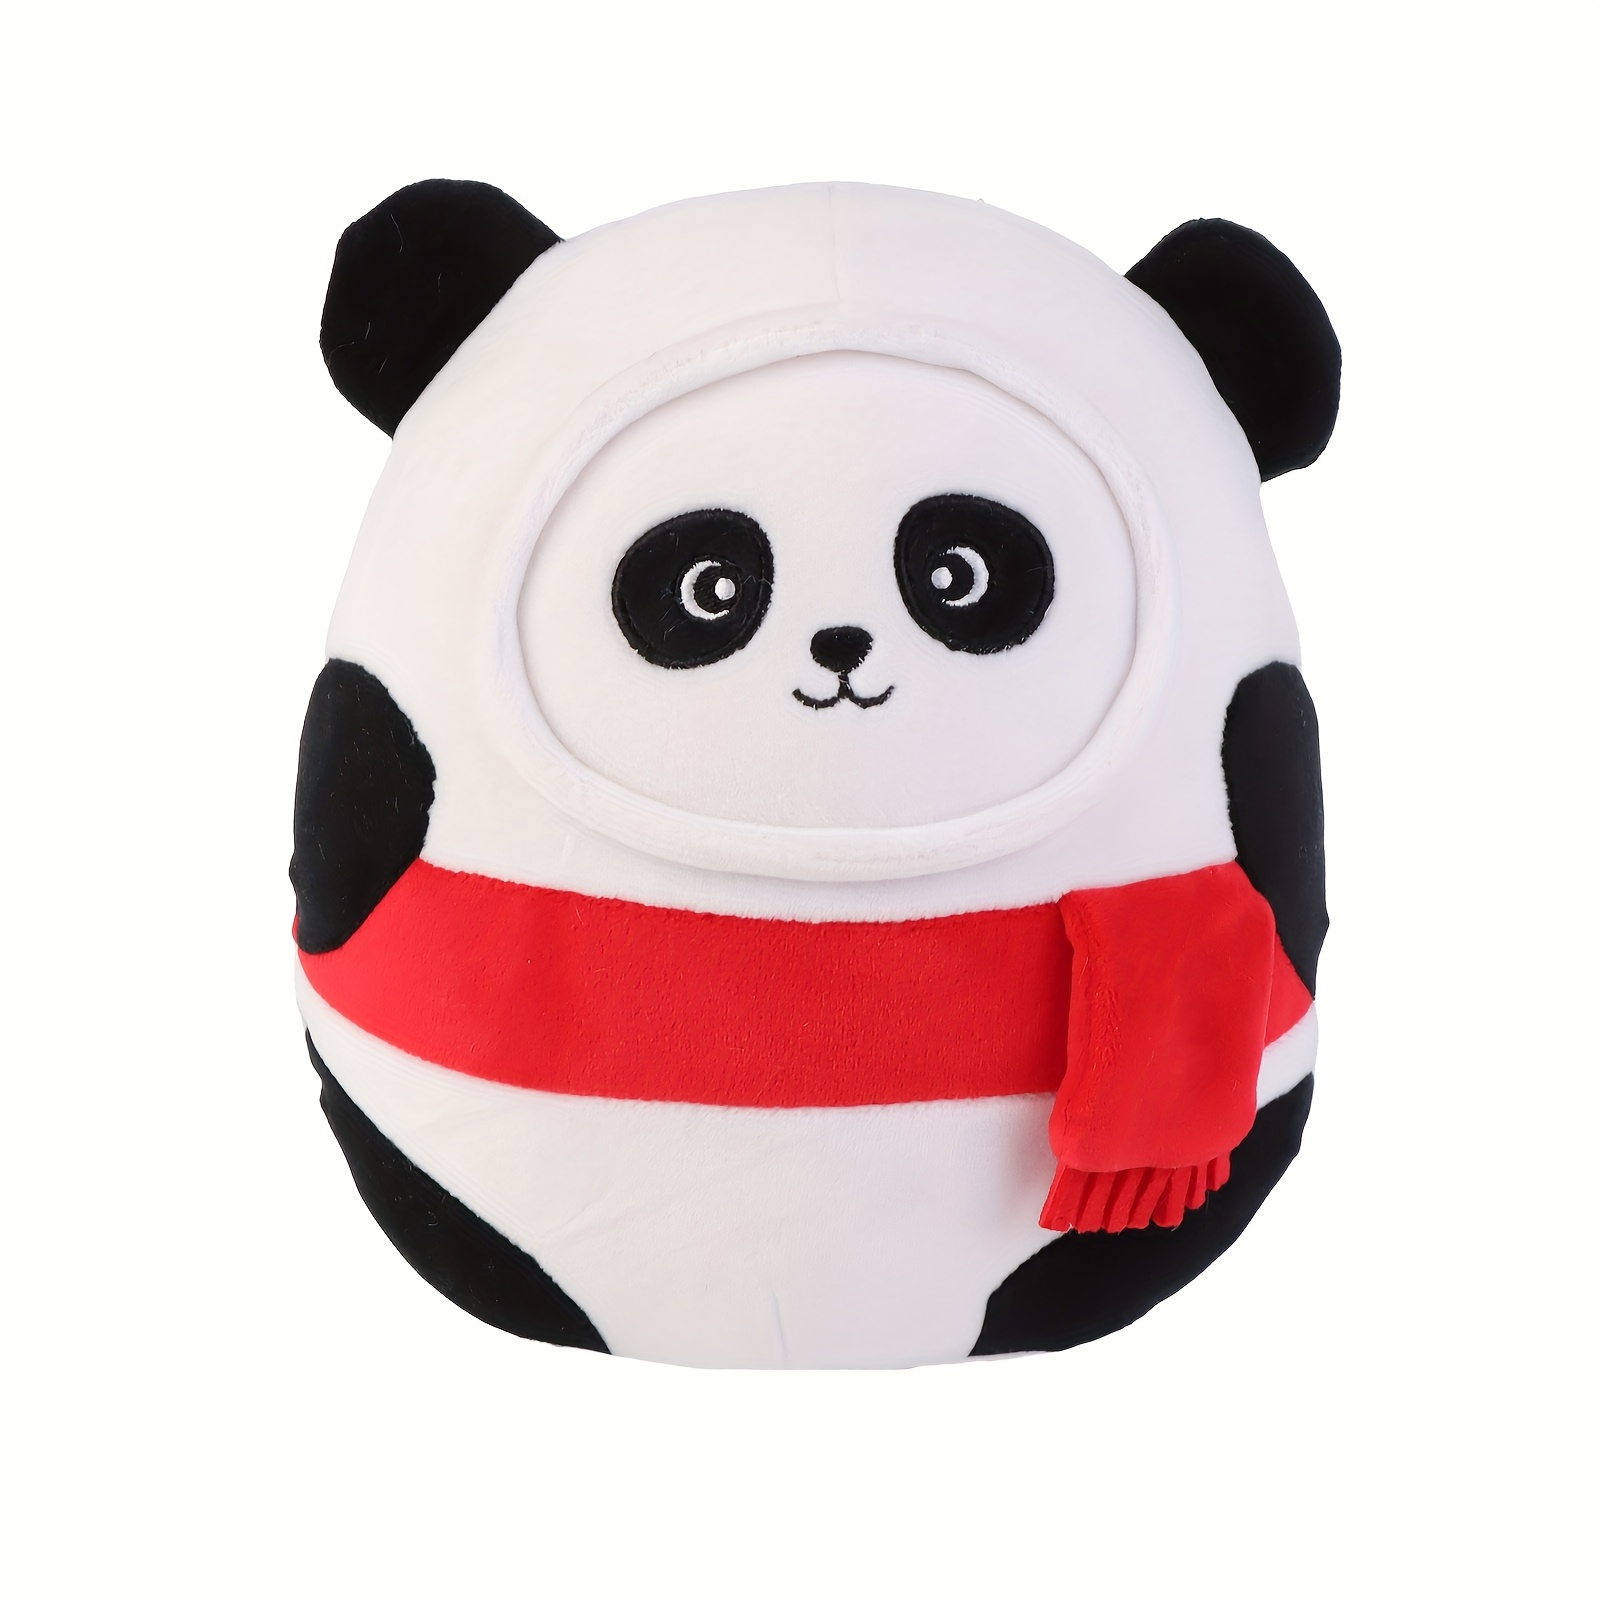 Bonnet panda en feutre pour enfant